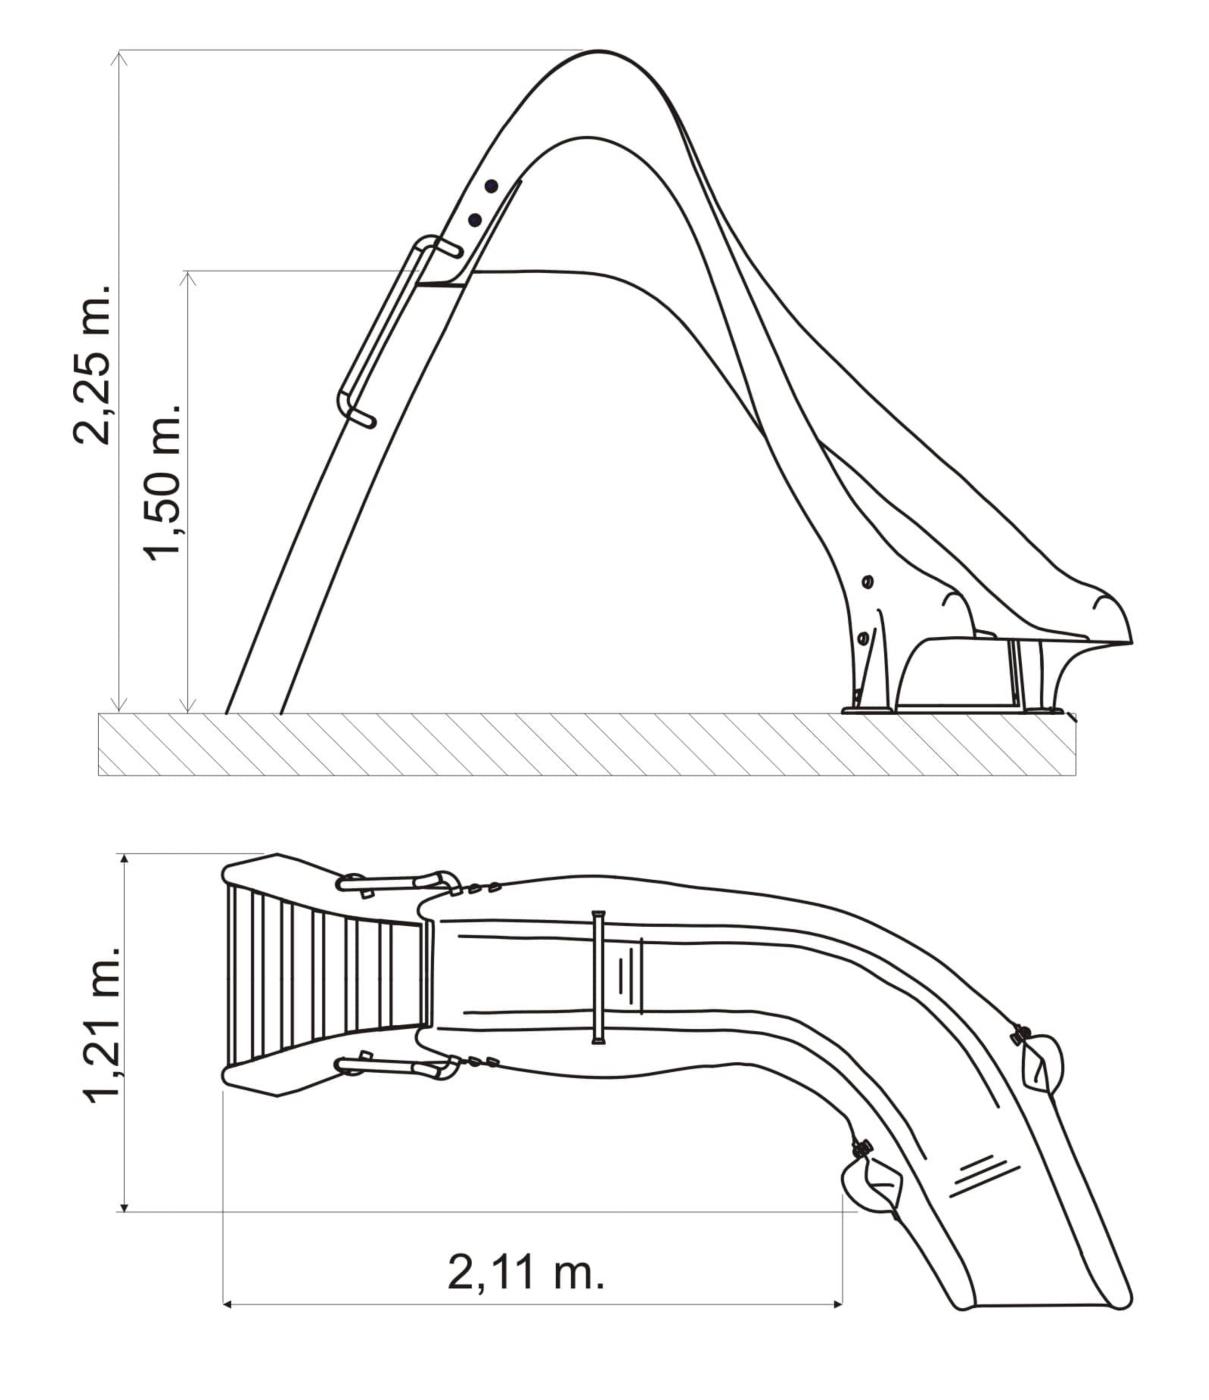 Toboagua para piscina curvado dereita ou esquerda de 150 cm de altura homologado para uso público